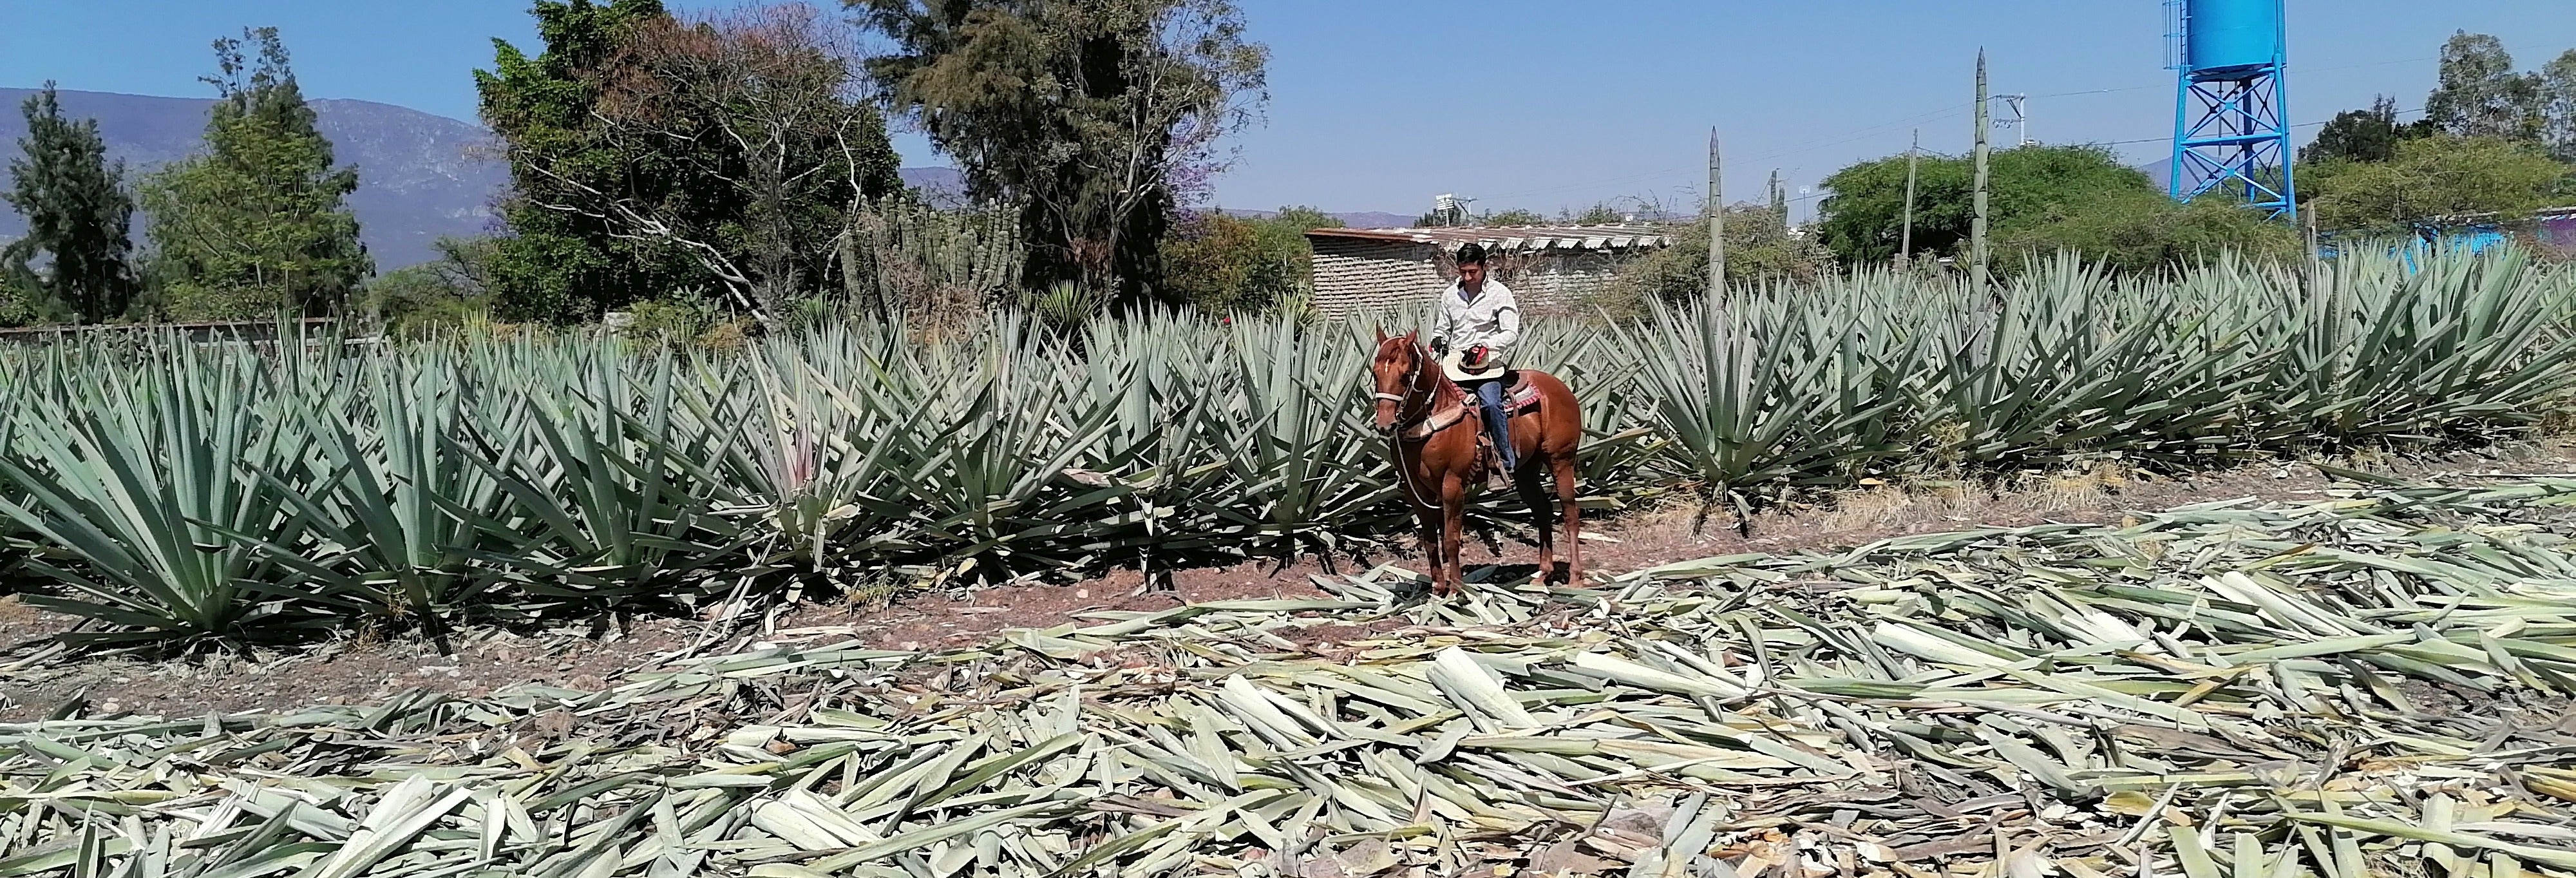 Oaxaca Horse Riding Tour